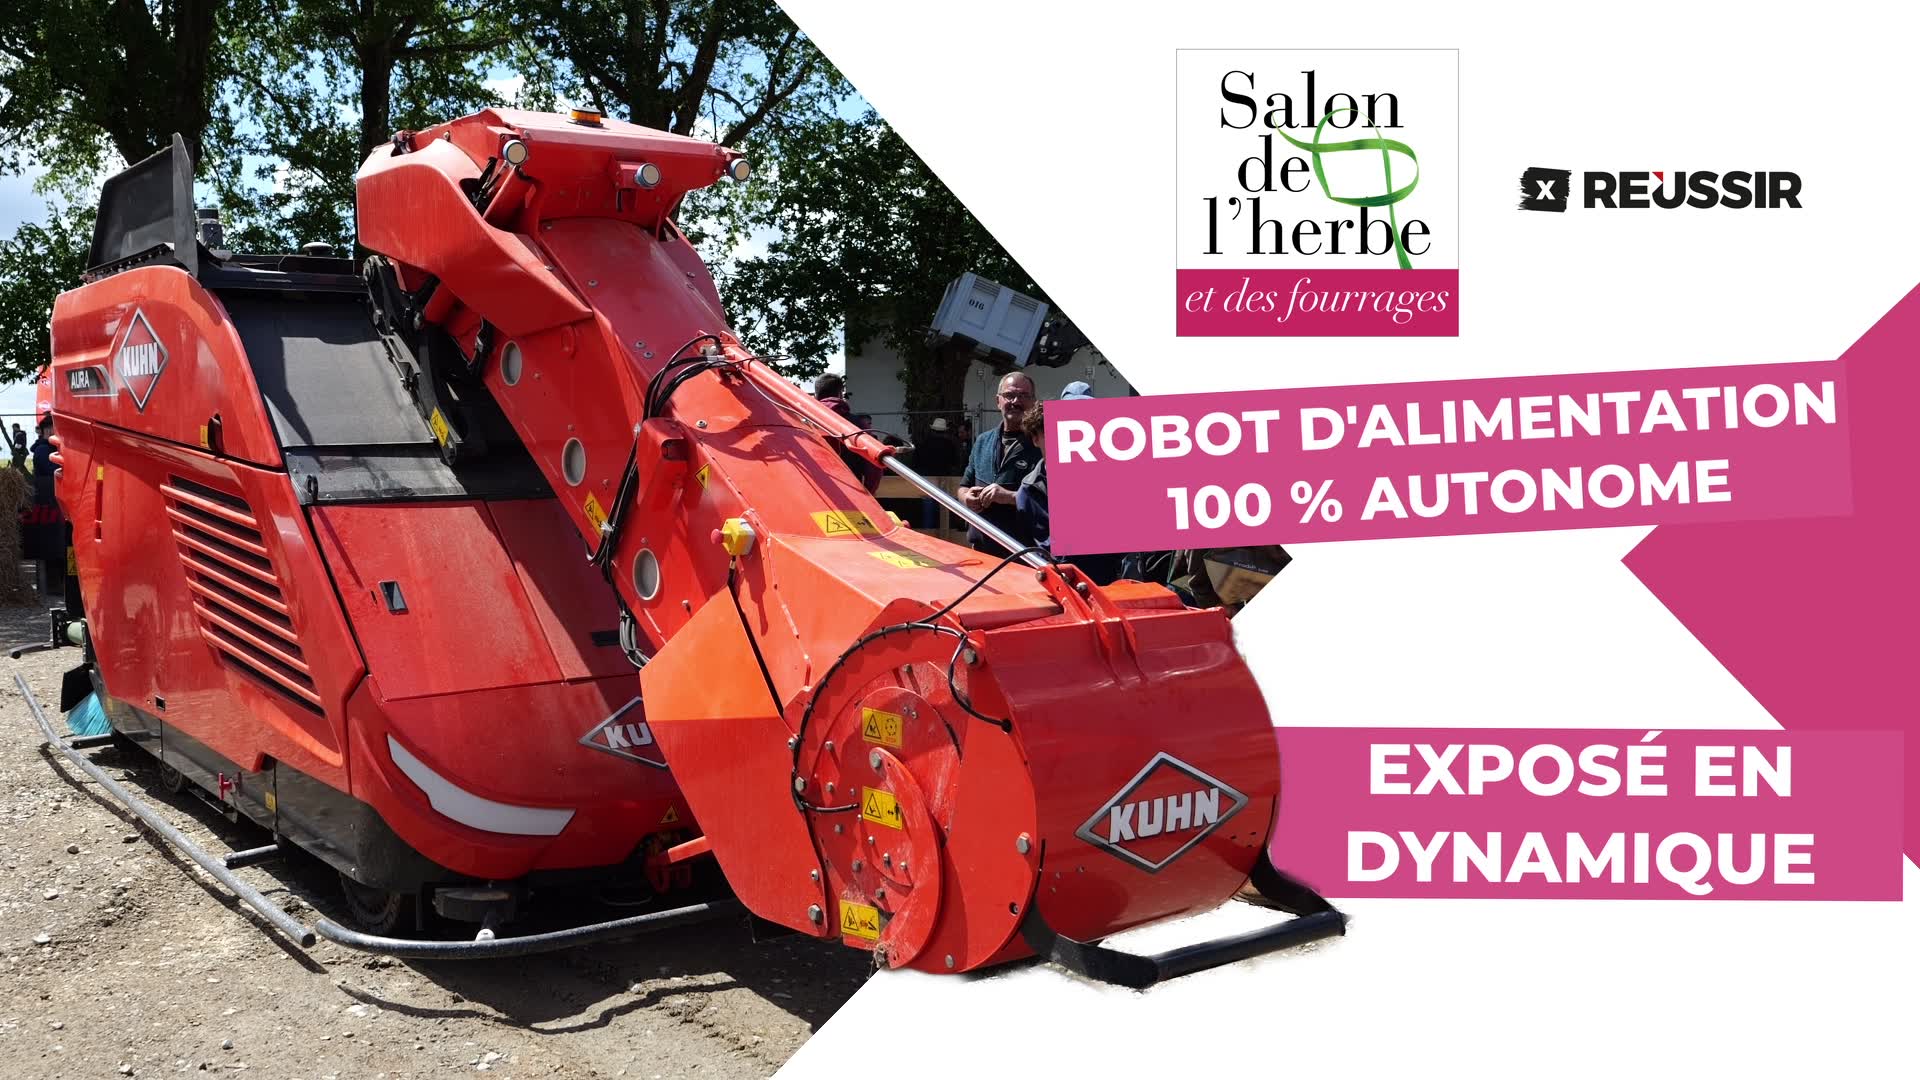 Kuhn Aura : un robot d'alimentation 100 % autonome exposé en dynamique au Salon de l'herbe